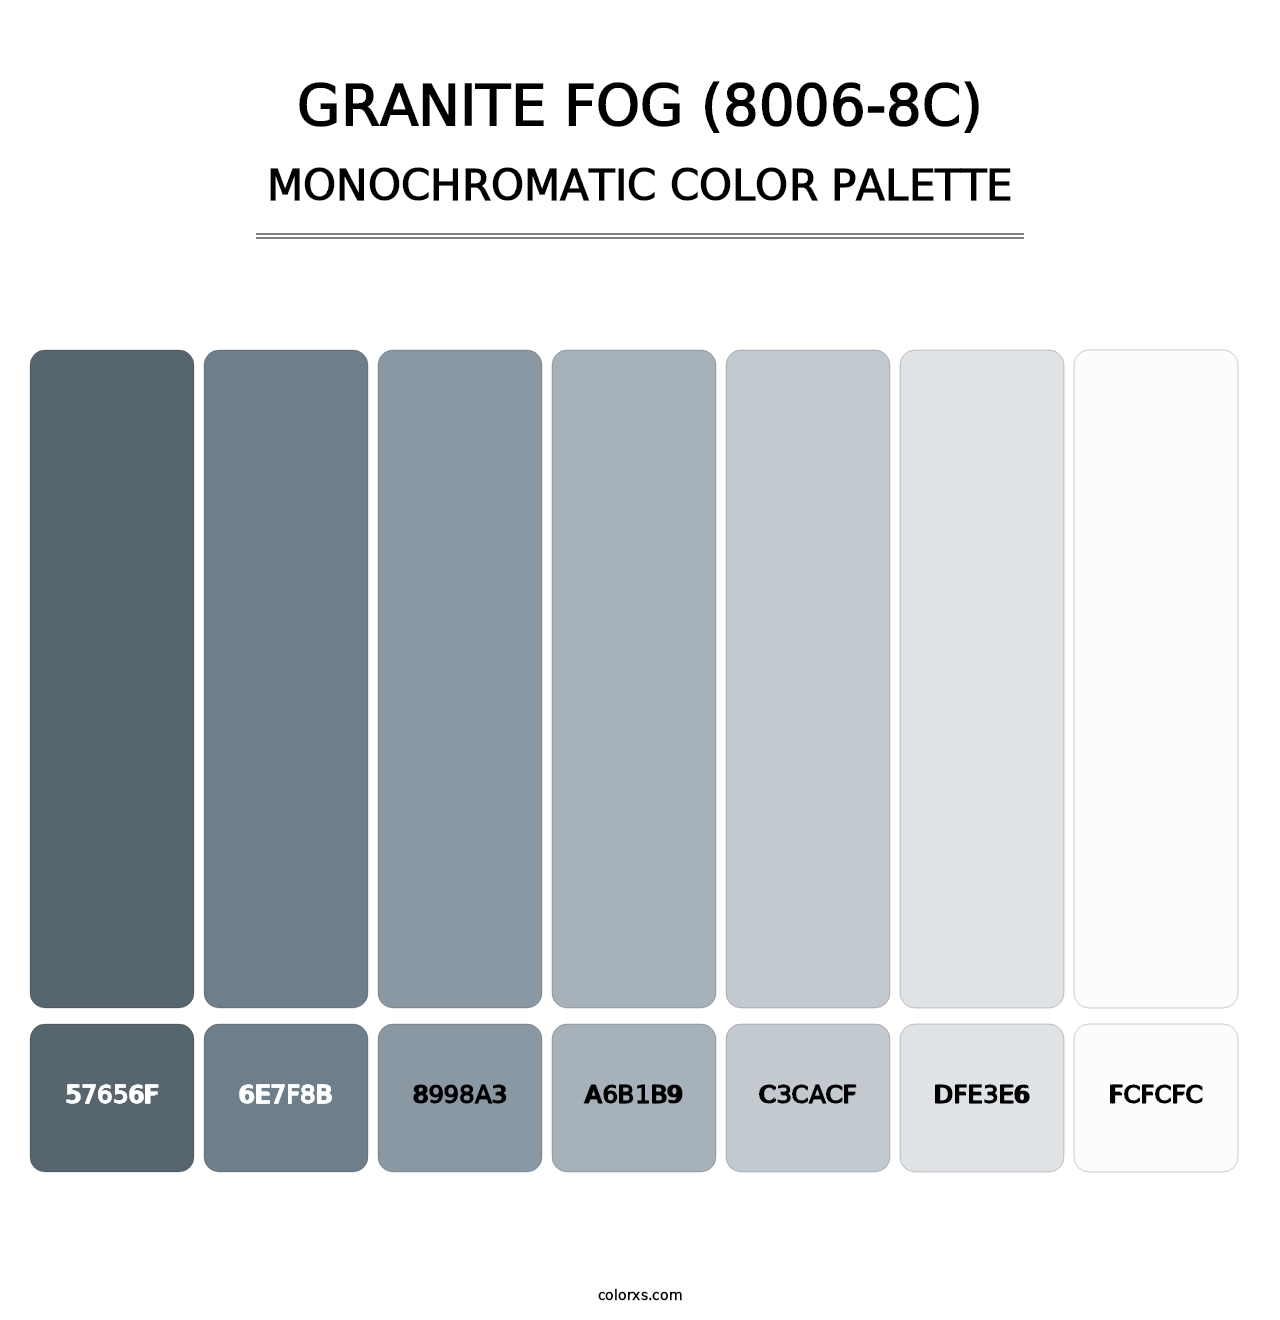 Granite Fog (8006-8C) - Monochromatic Color Palette